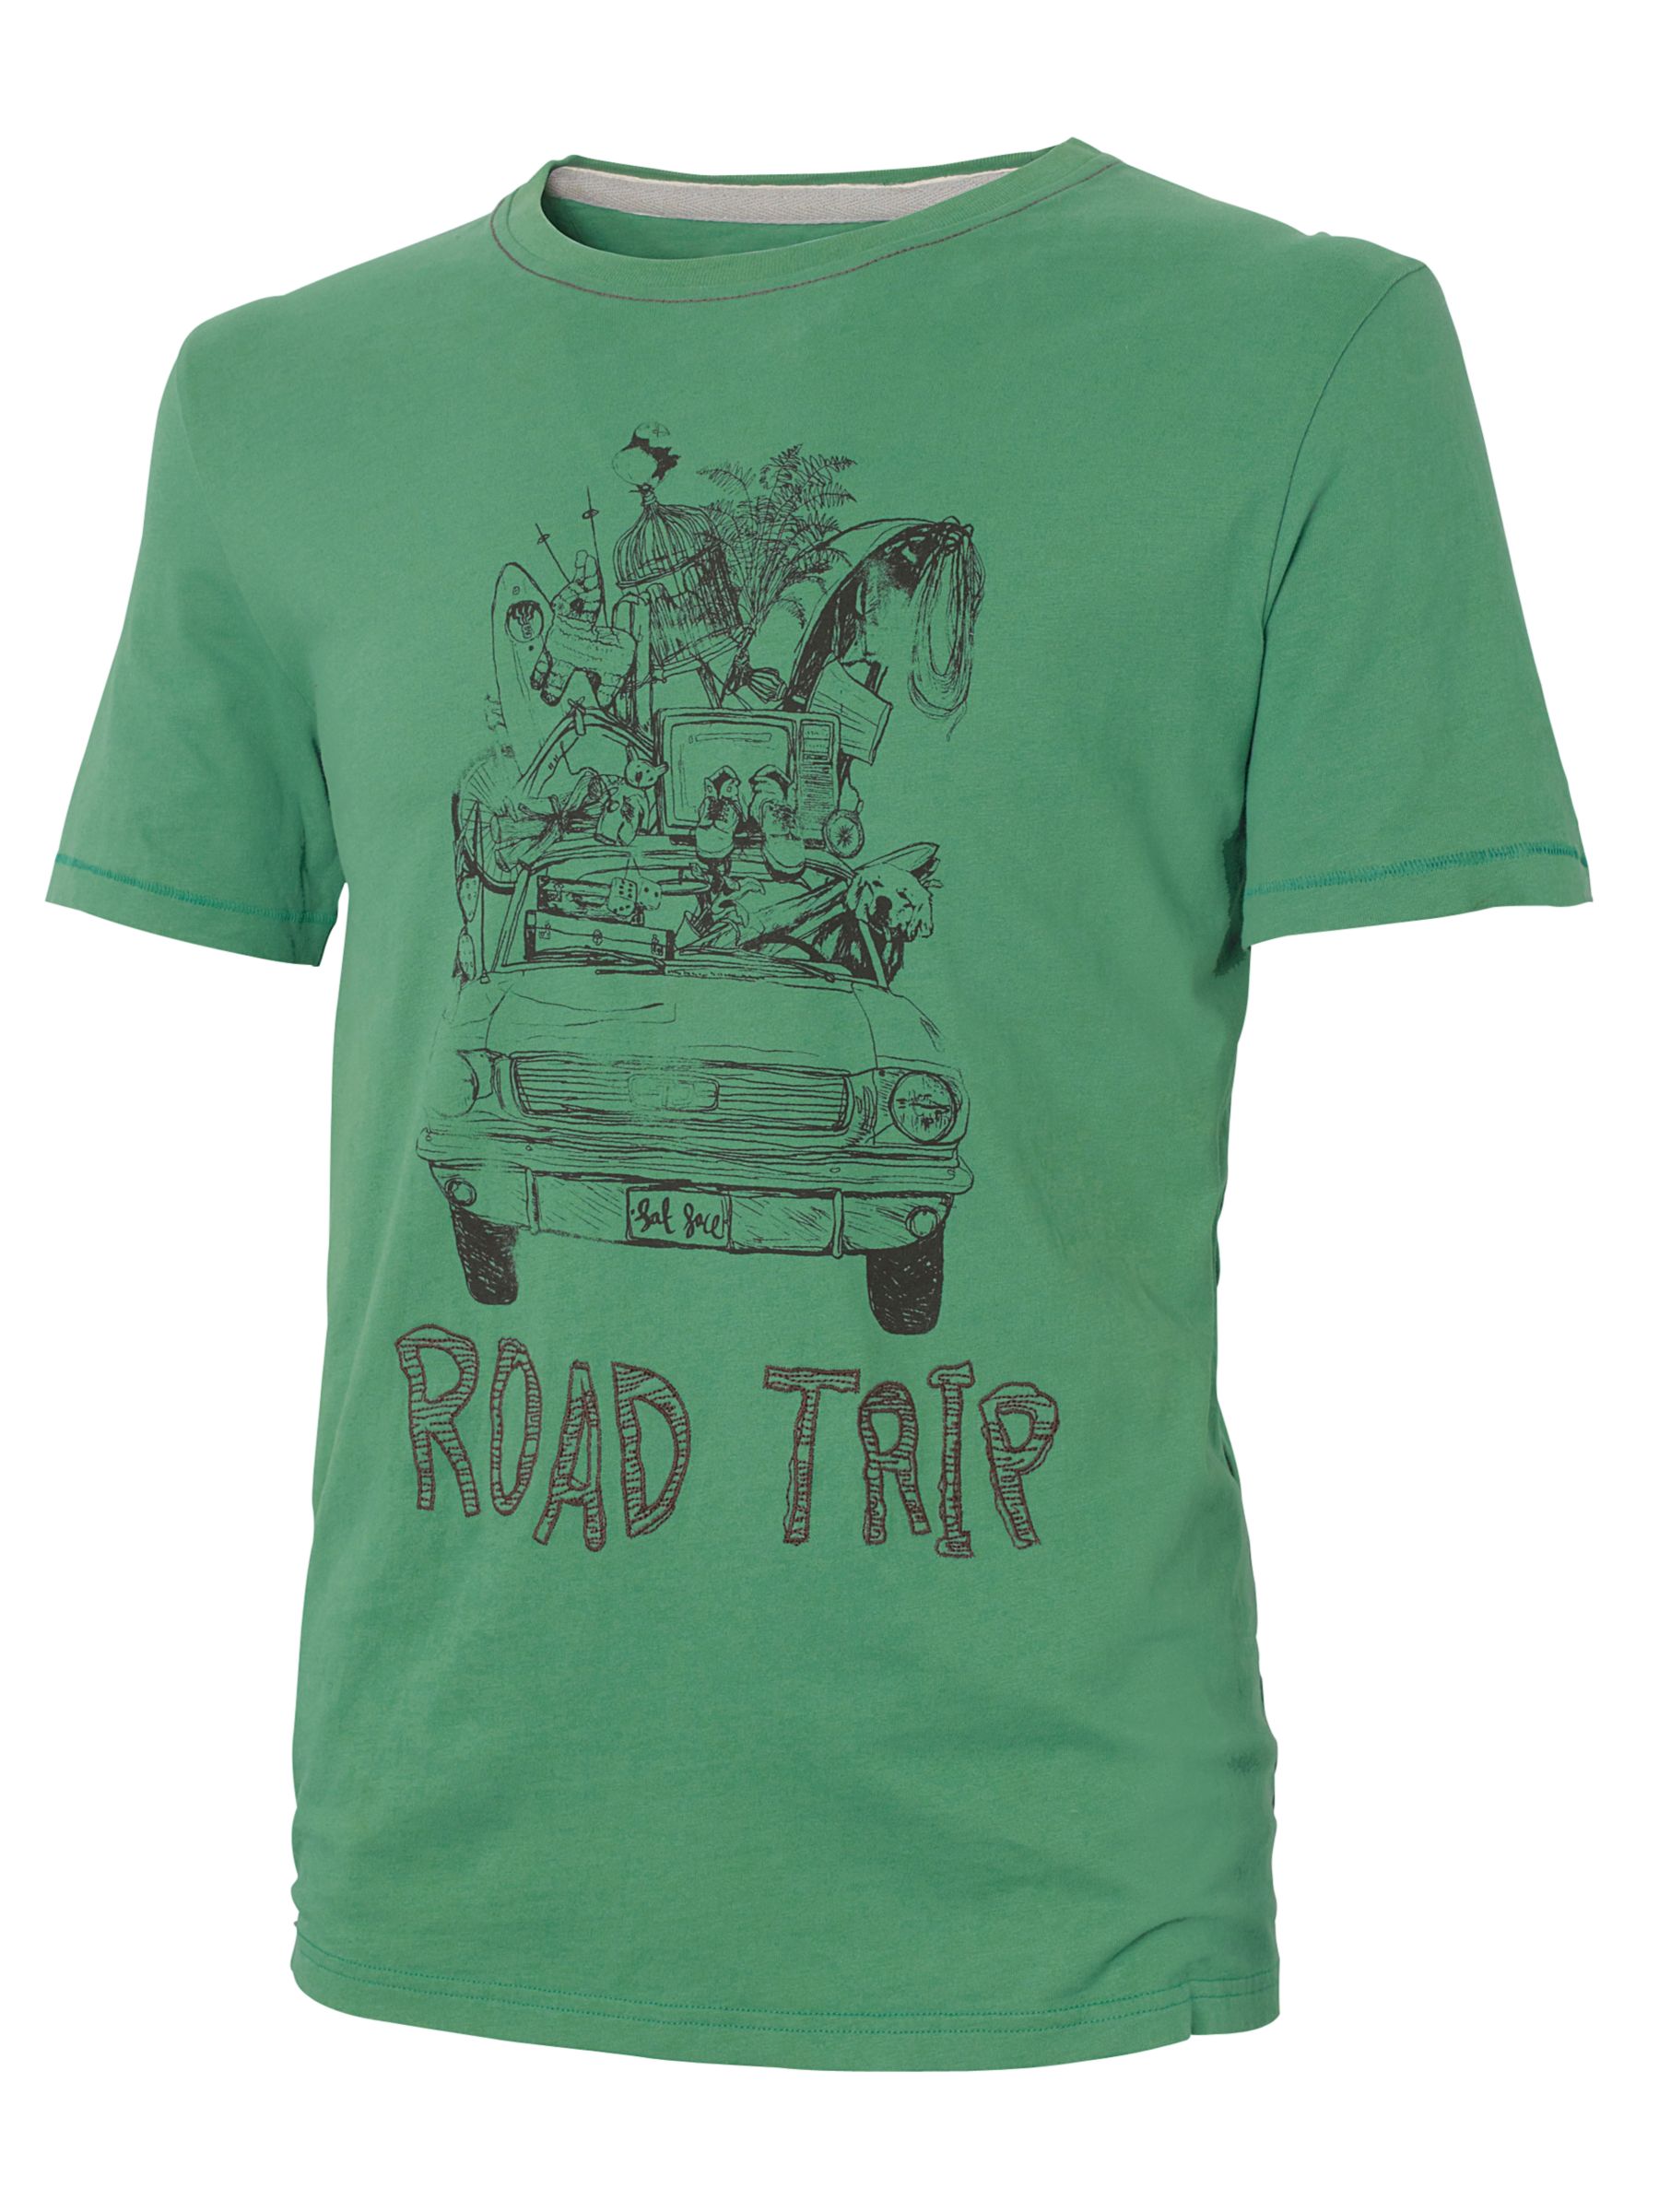 Fat Face Road Trip T-Shirt, Grass Green